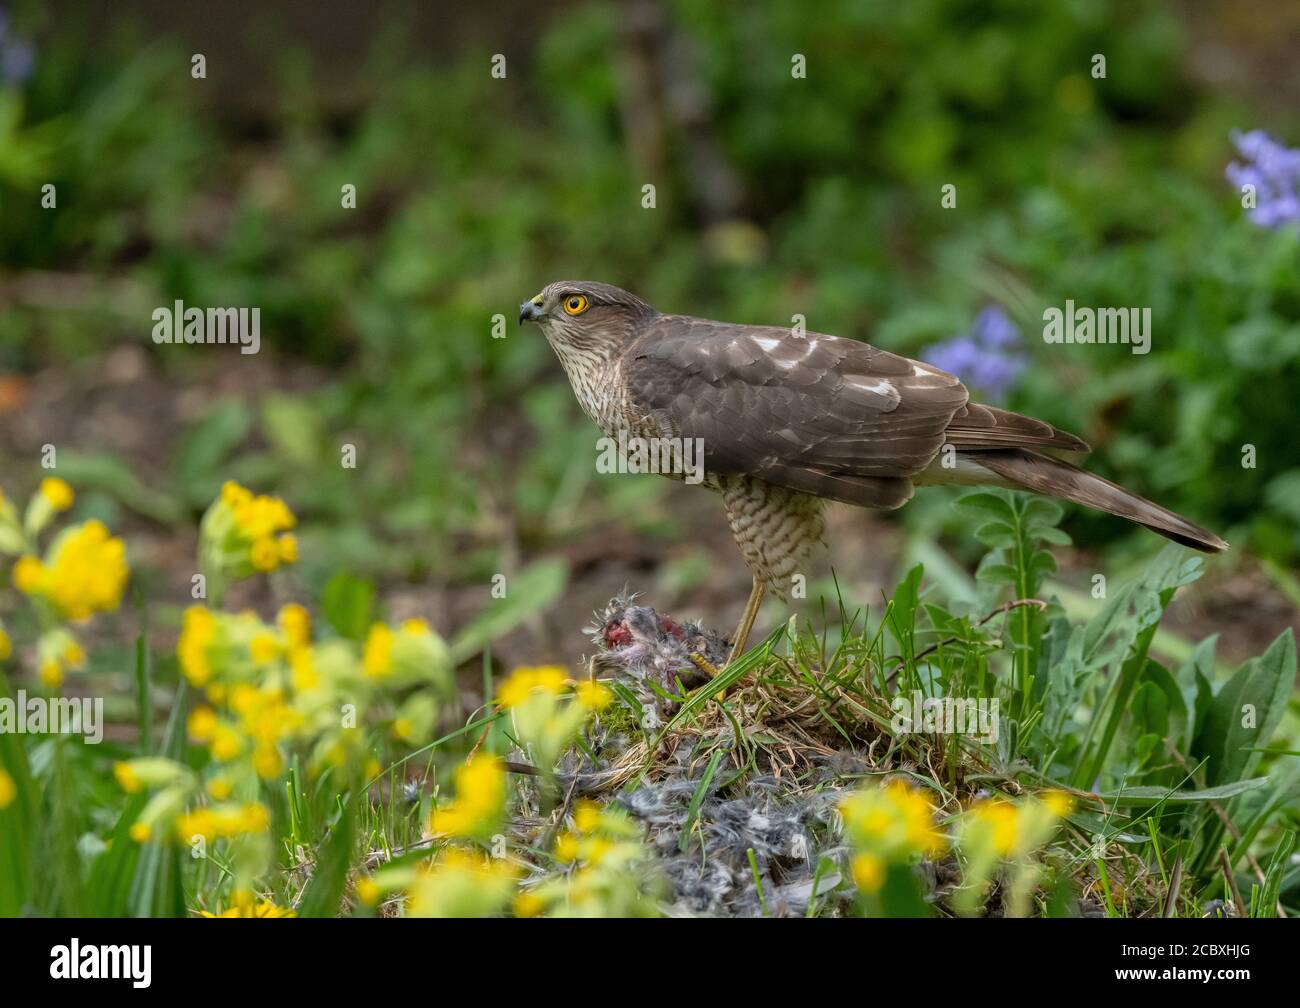 Weibchen Sparrowhawk, Accipiter nisus, mit vor kurzem getöteten Haus Sparrow, in Wildtiergarten. Stockfoto